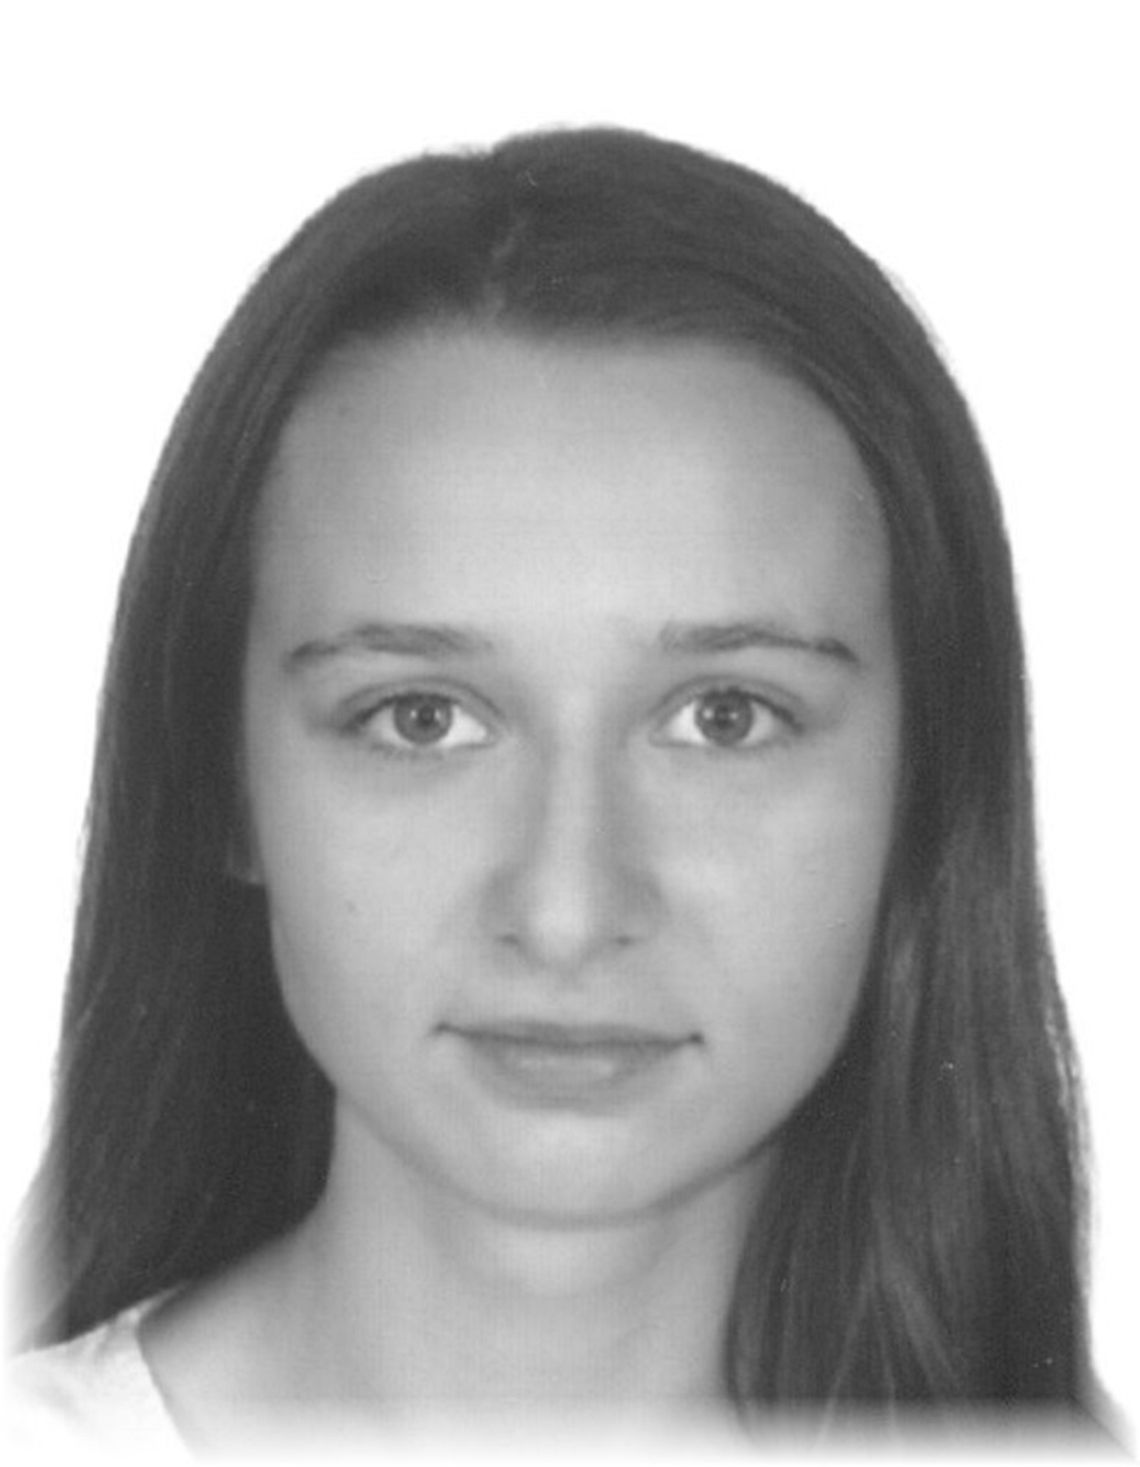 Biała Podlaska: Poszukiwana Eliza Błażejowska